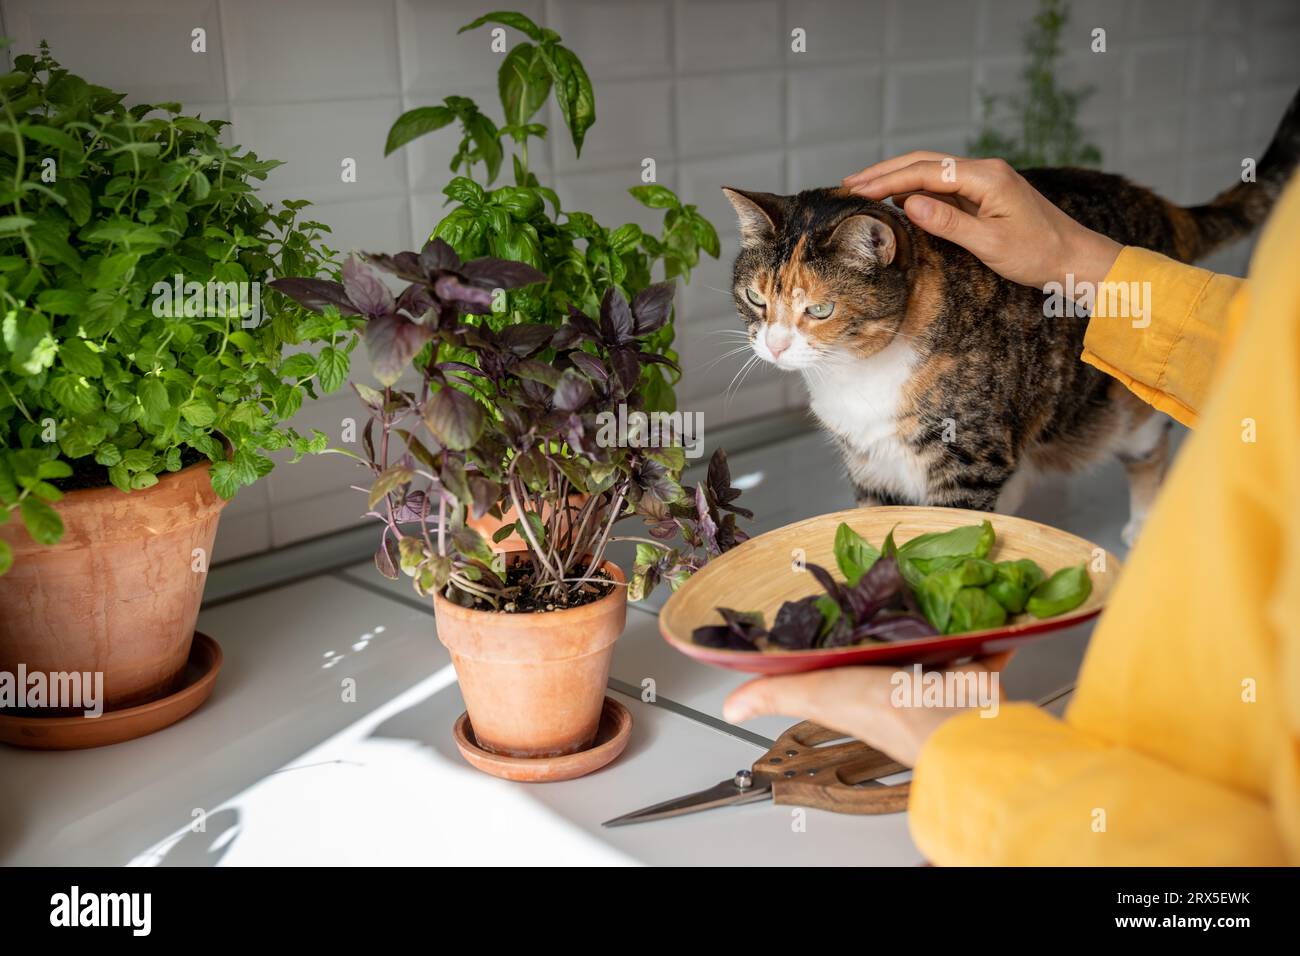 Gärtnerin streichelt neugierige Katze. Violette und grüne Basilikumblätter auf der Platte, Haustier schnüffelt herum Stockfoto